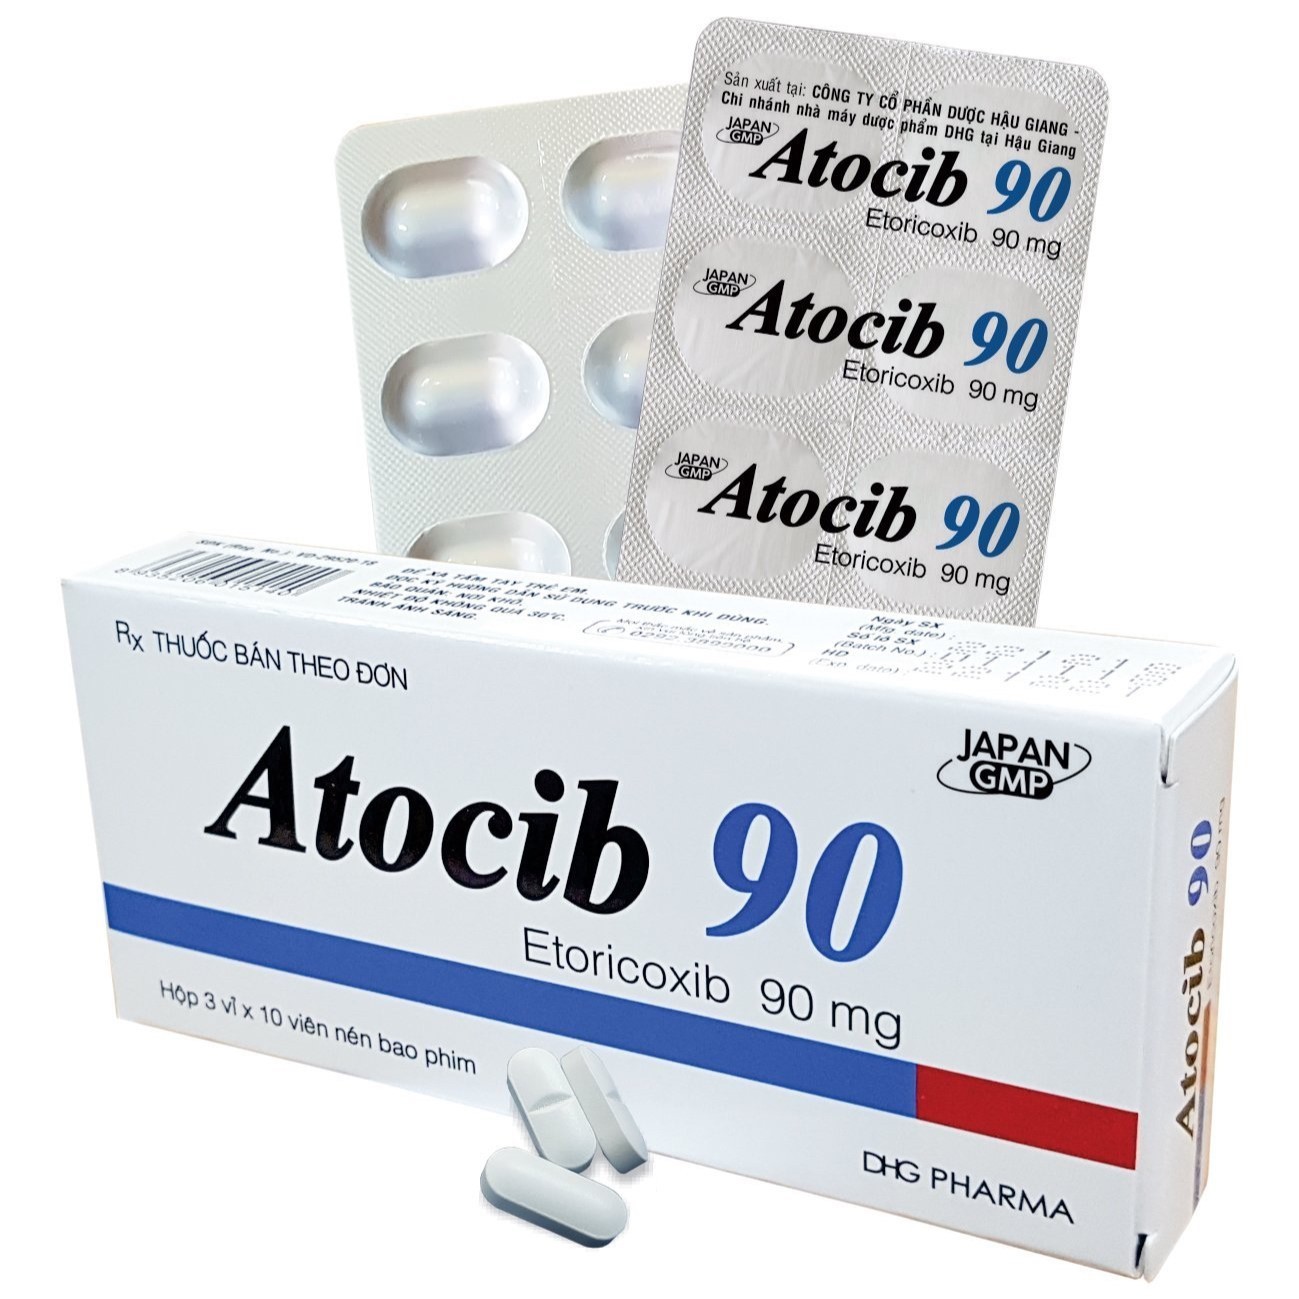 Thuốc bán theo đơn Atocib 90 có thành phần etoricoxib với hàm lượng 90 mg